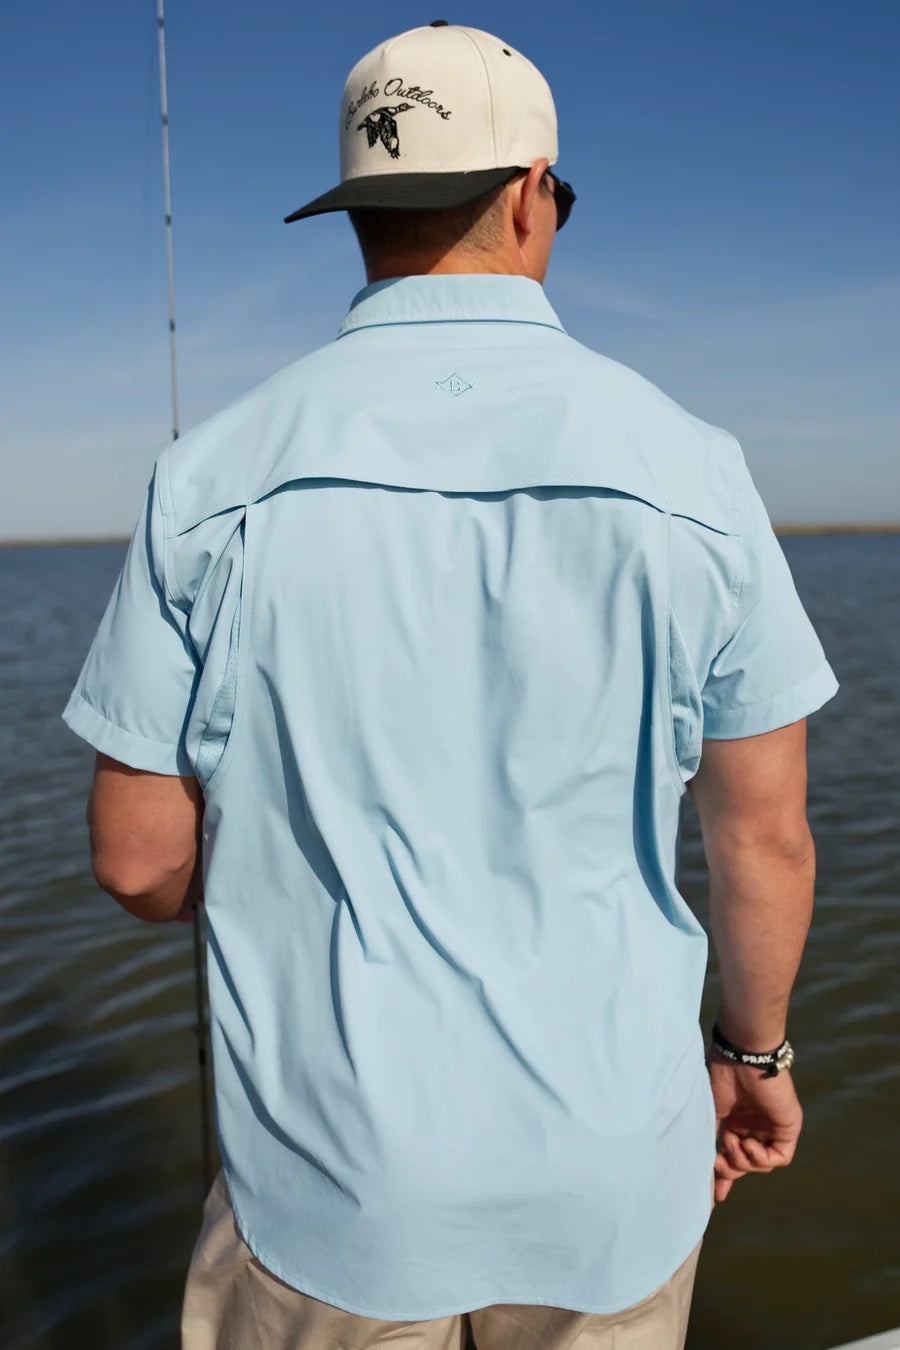 Burlebo Dusty Blue Performance Fishing Shirt Large